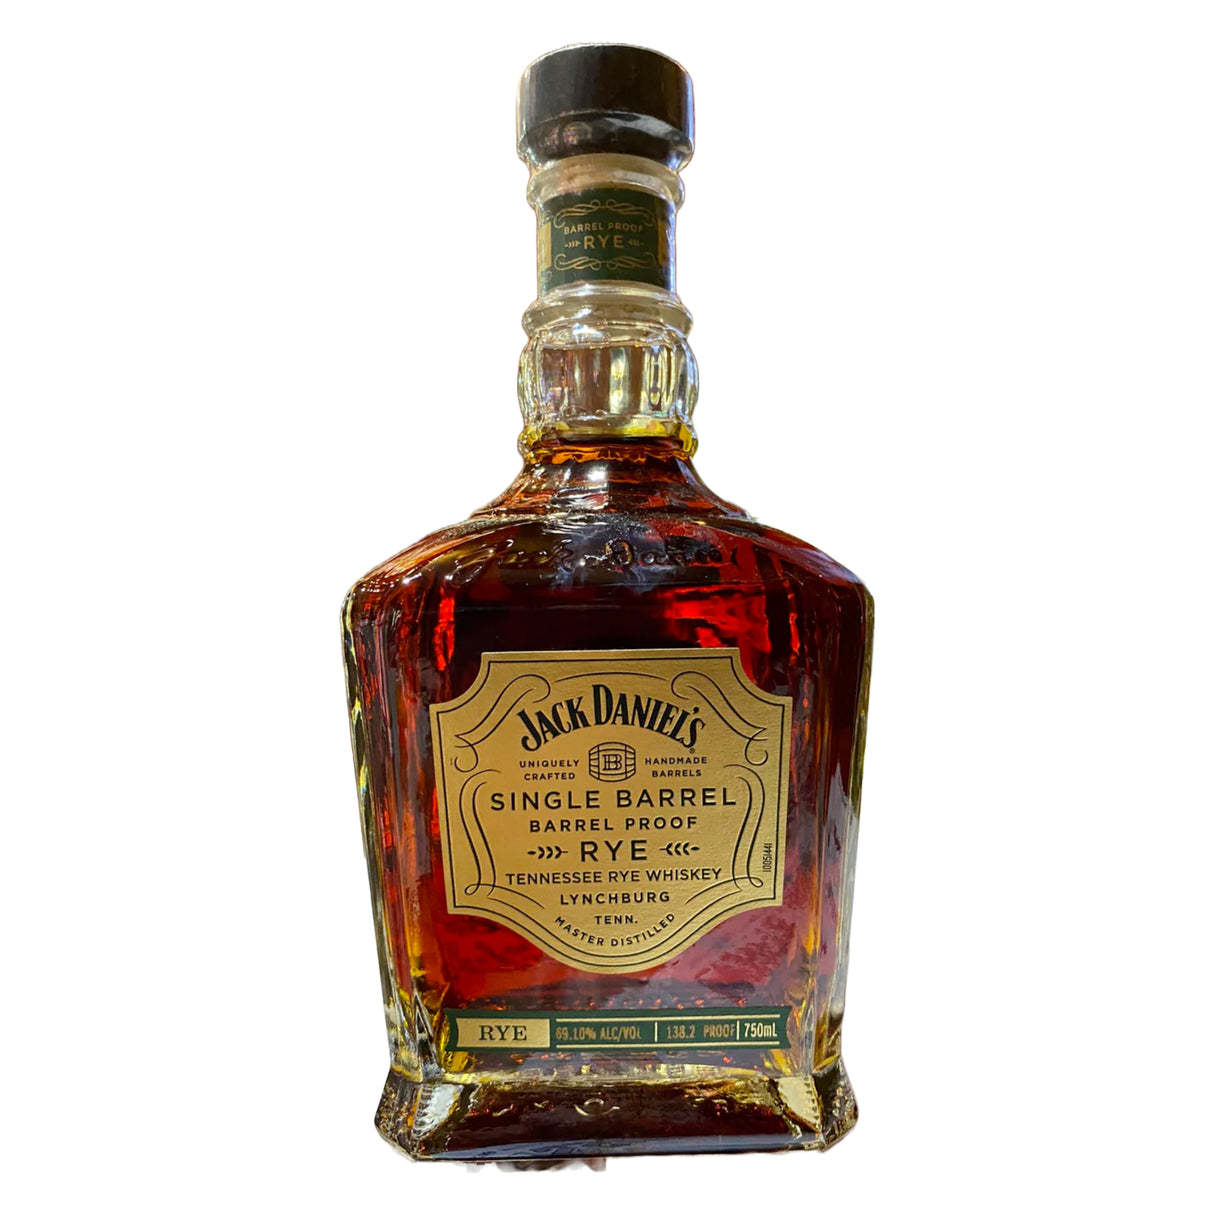 Jack Daniel's Single Barrel Special Release Barrel Proof Tennessee Rye Whiskey 750ml